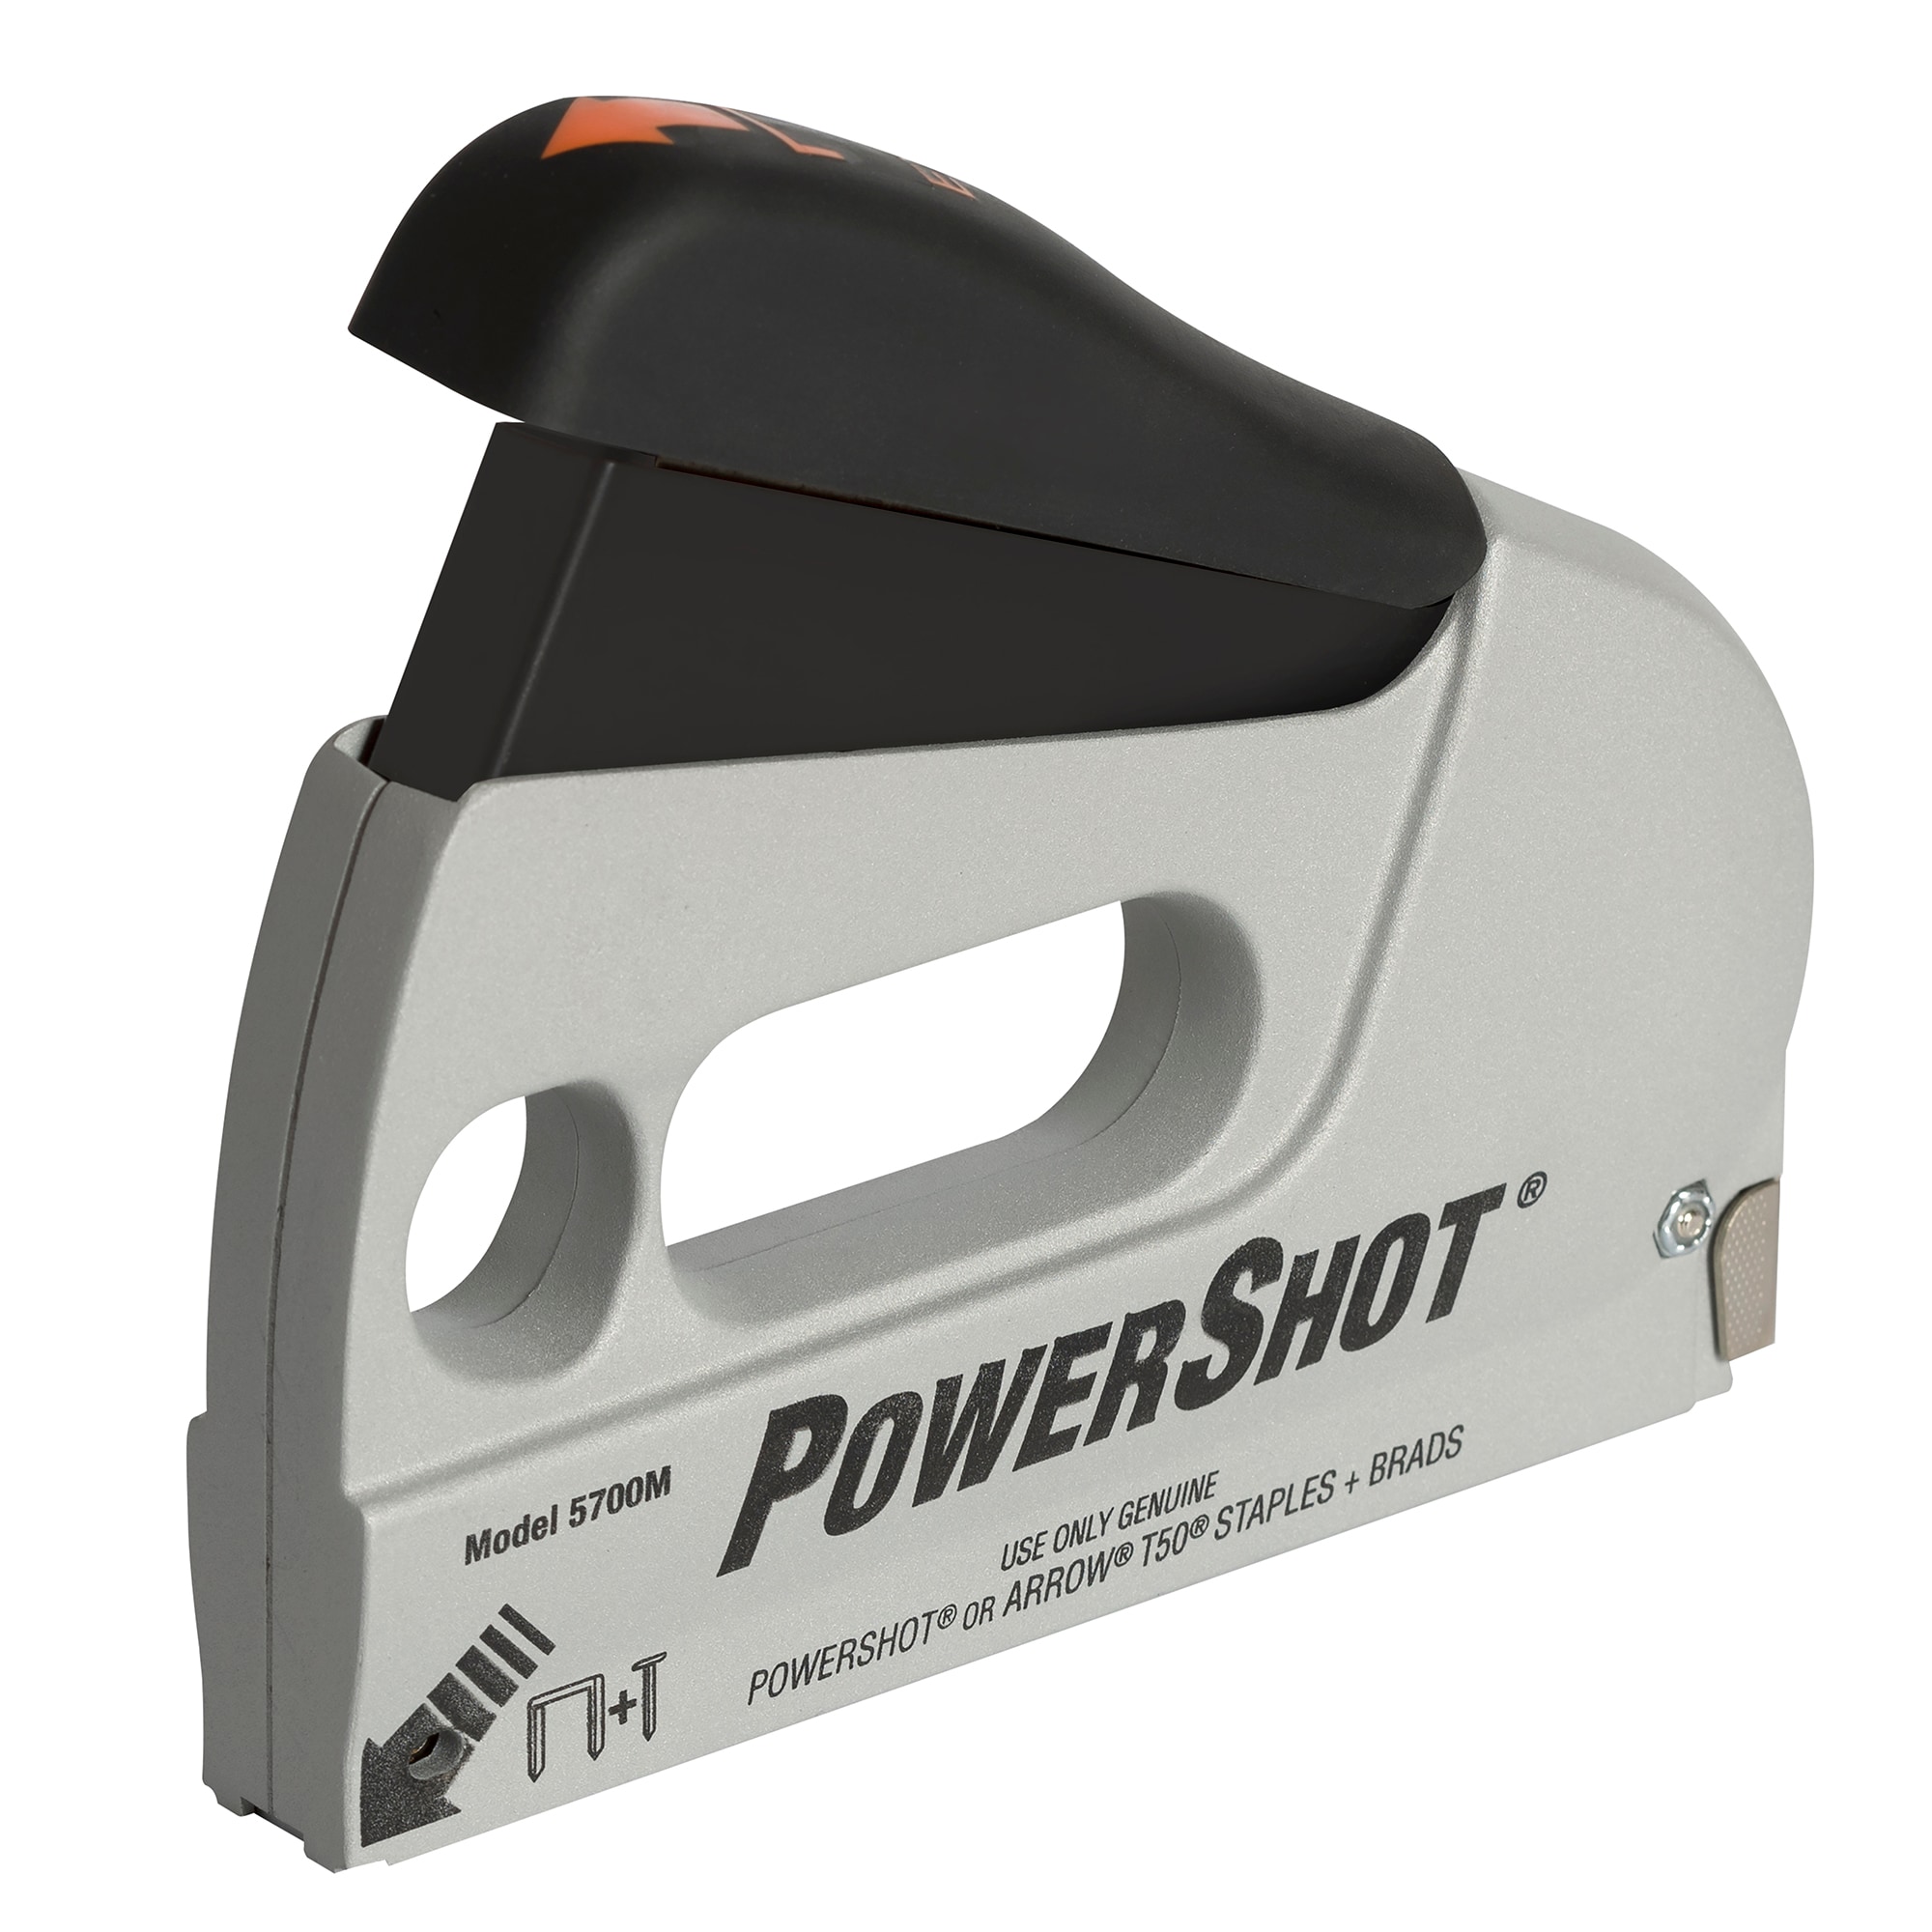 PowerShot Heavy Duty Staple & Nail Gun